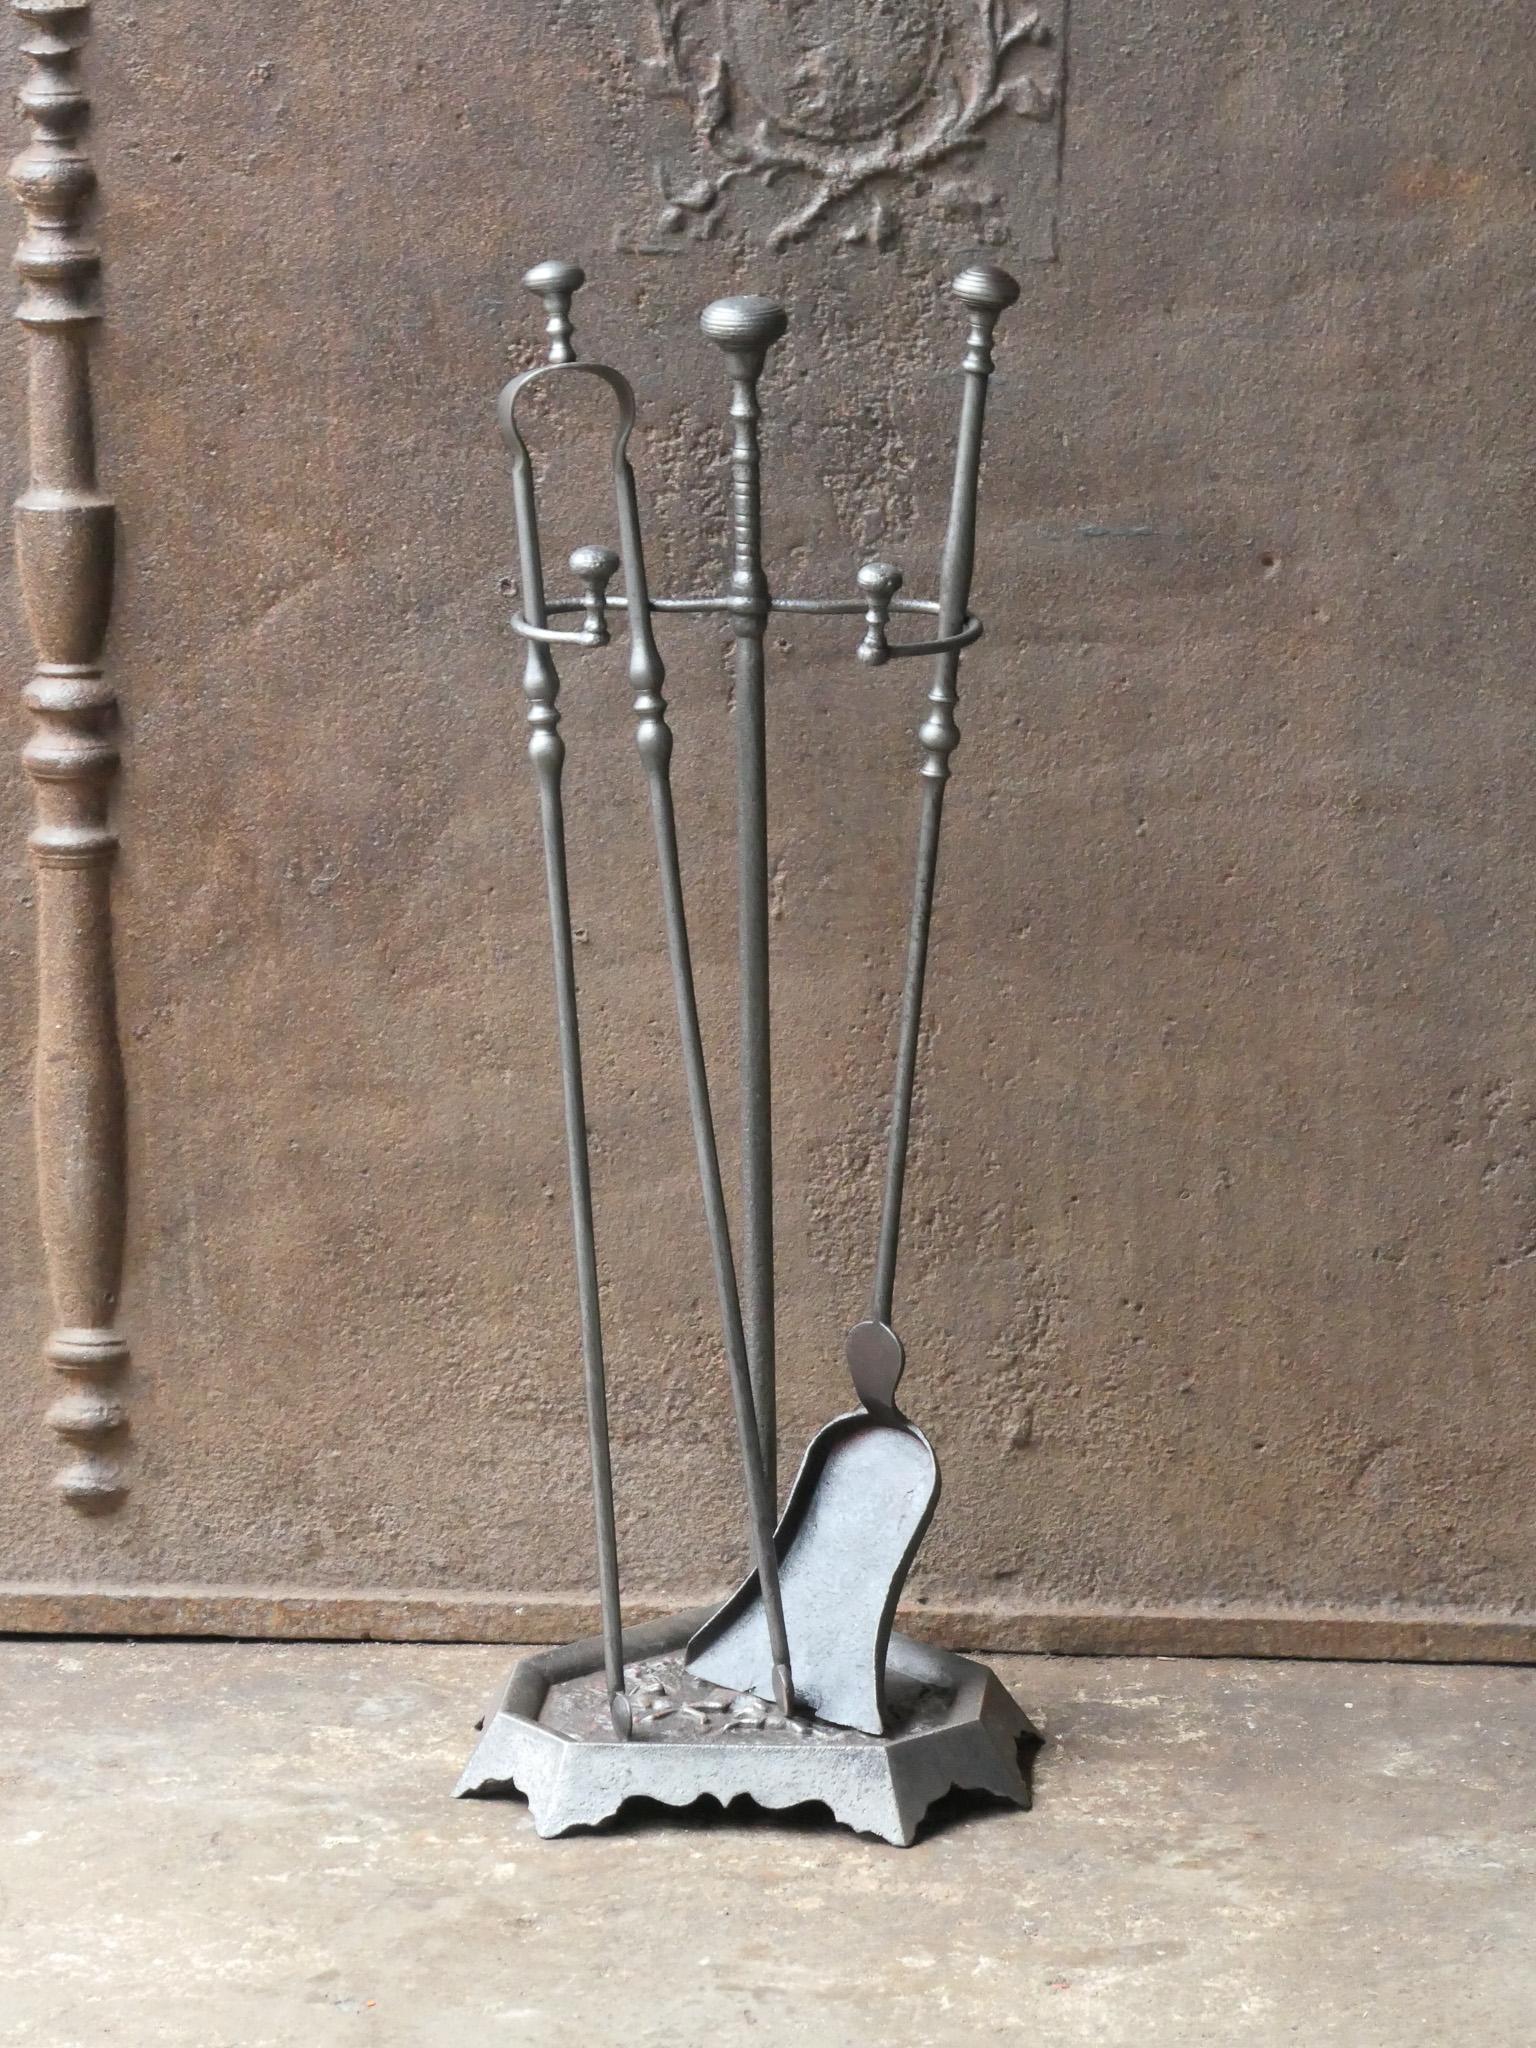 Ensemble d'outils de cheminée français du 19e siècle. Période Napoléon III. L'ensemble d'outils se compose d'une pince, d'une pelle et d'un support. Les outils sont en fer forgé et le support en fonte. L'ensemble est en bon état et apte à être